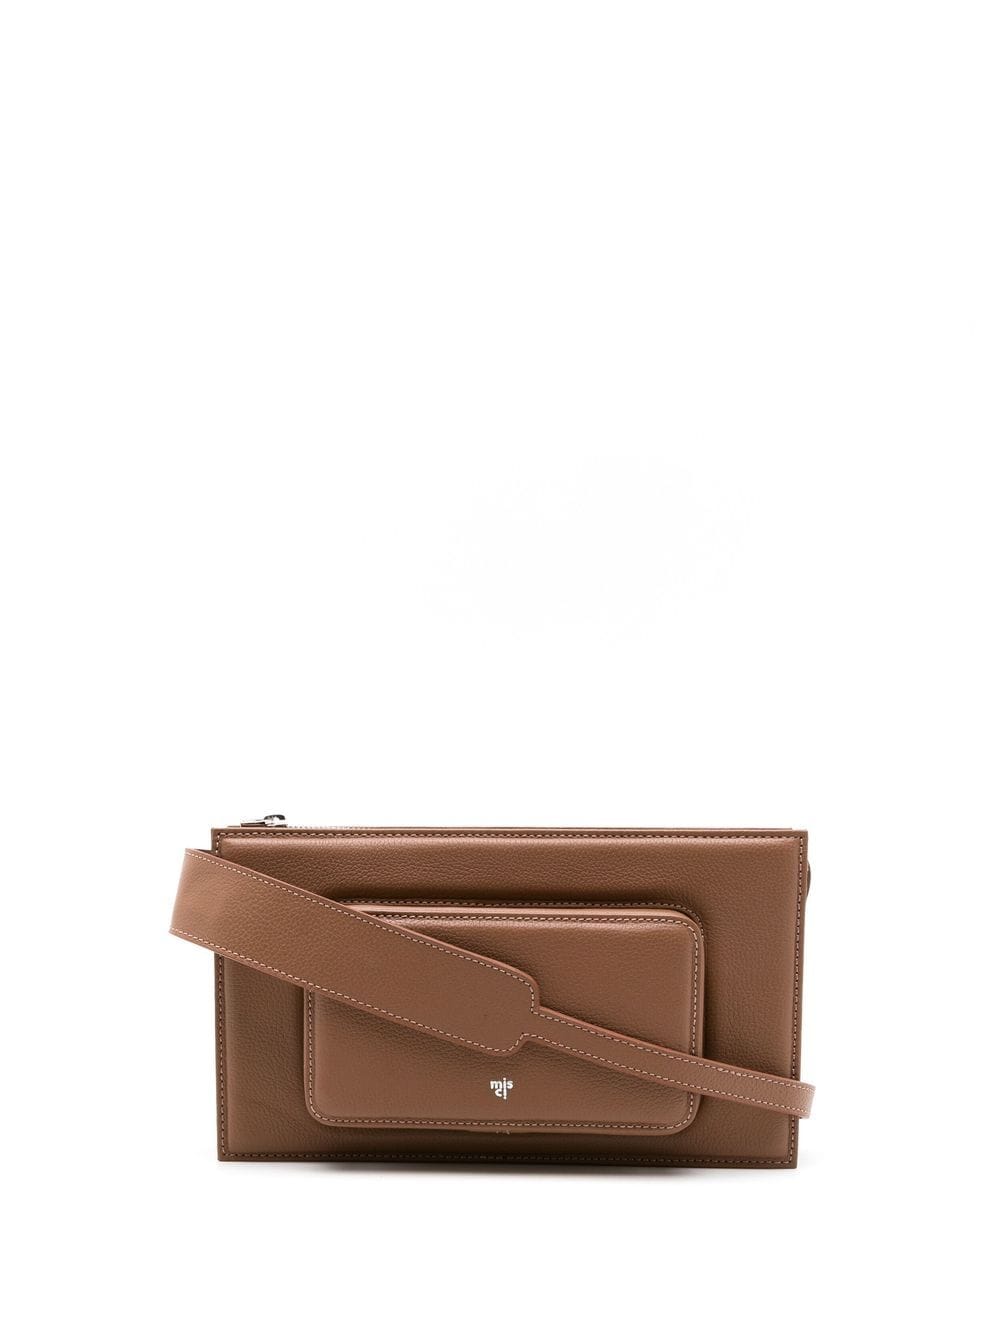 Misci Rectangular Leather Shoulder Bag In Brown